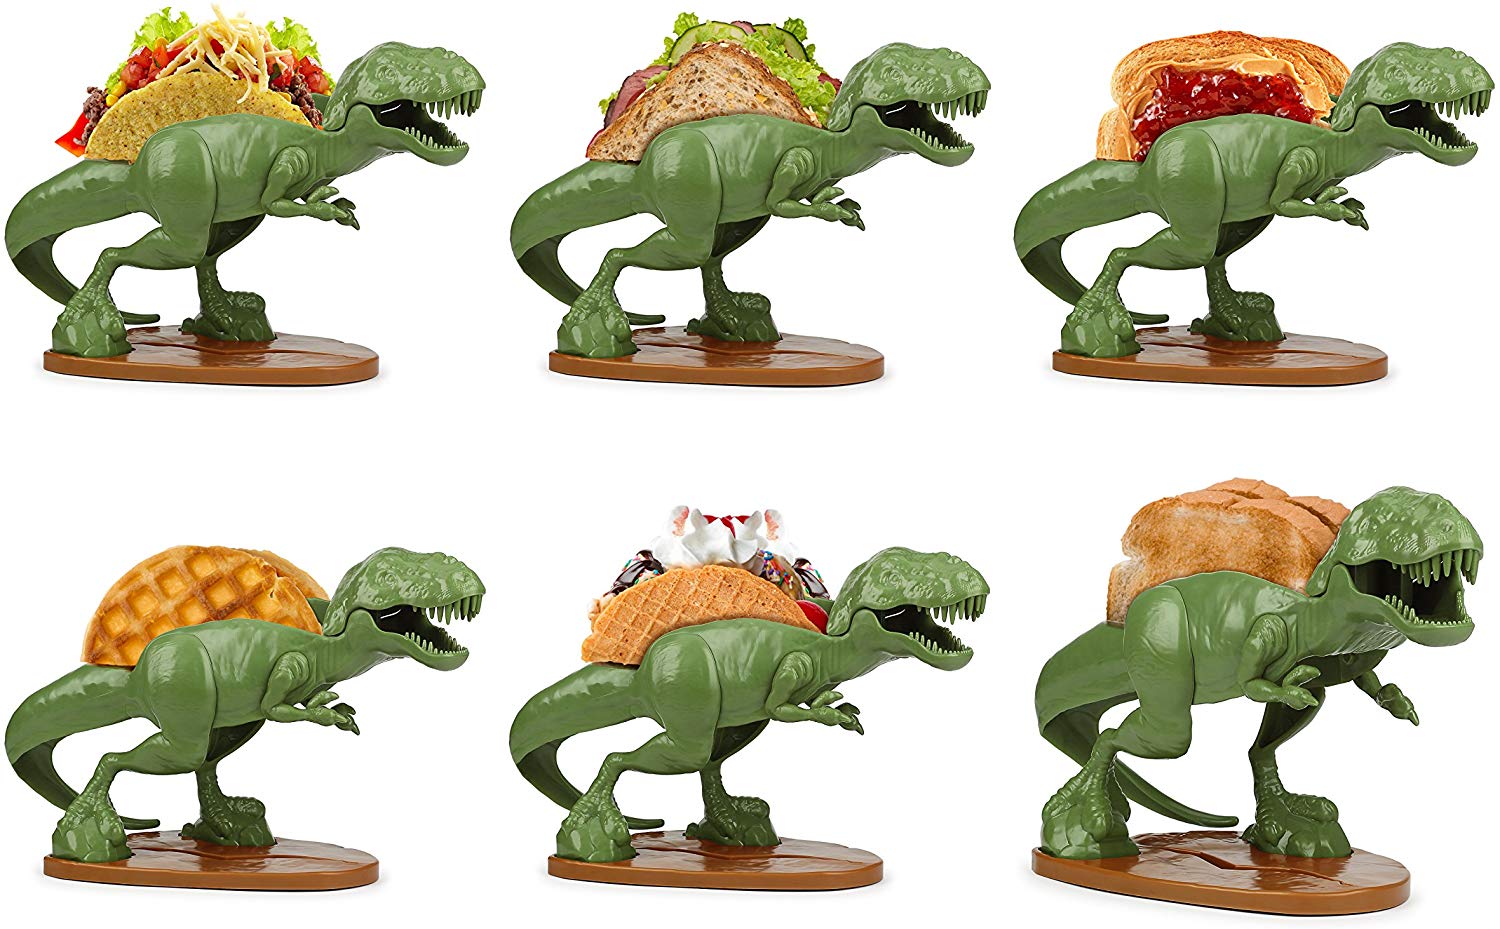 Dinosaur Taco Holder - oddgifts.com